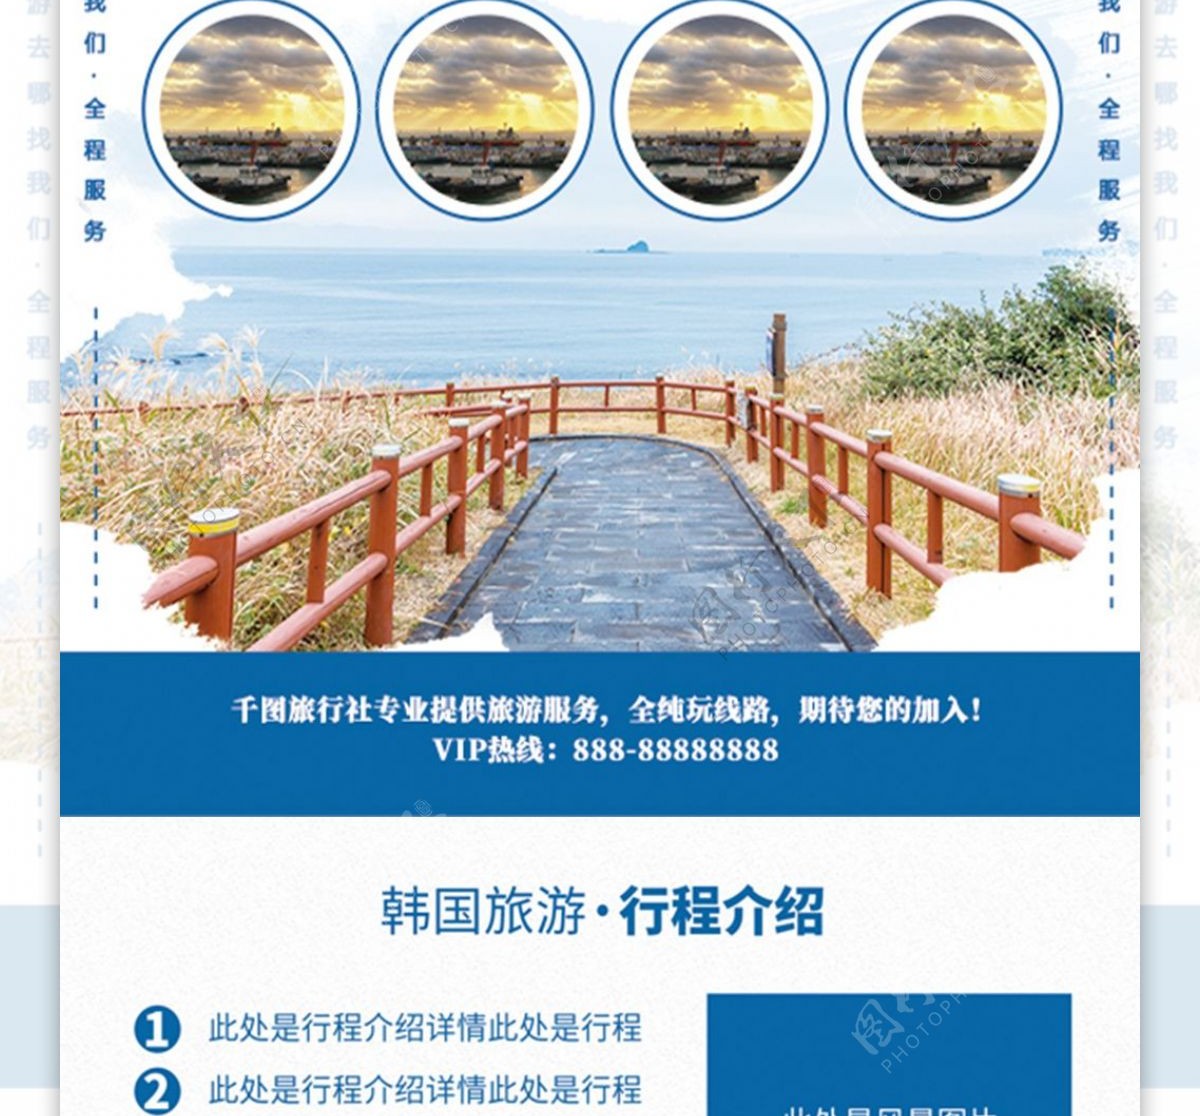 蓝色清新简约韩国印象韩国旅游宣传单